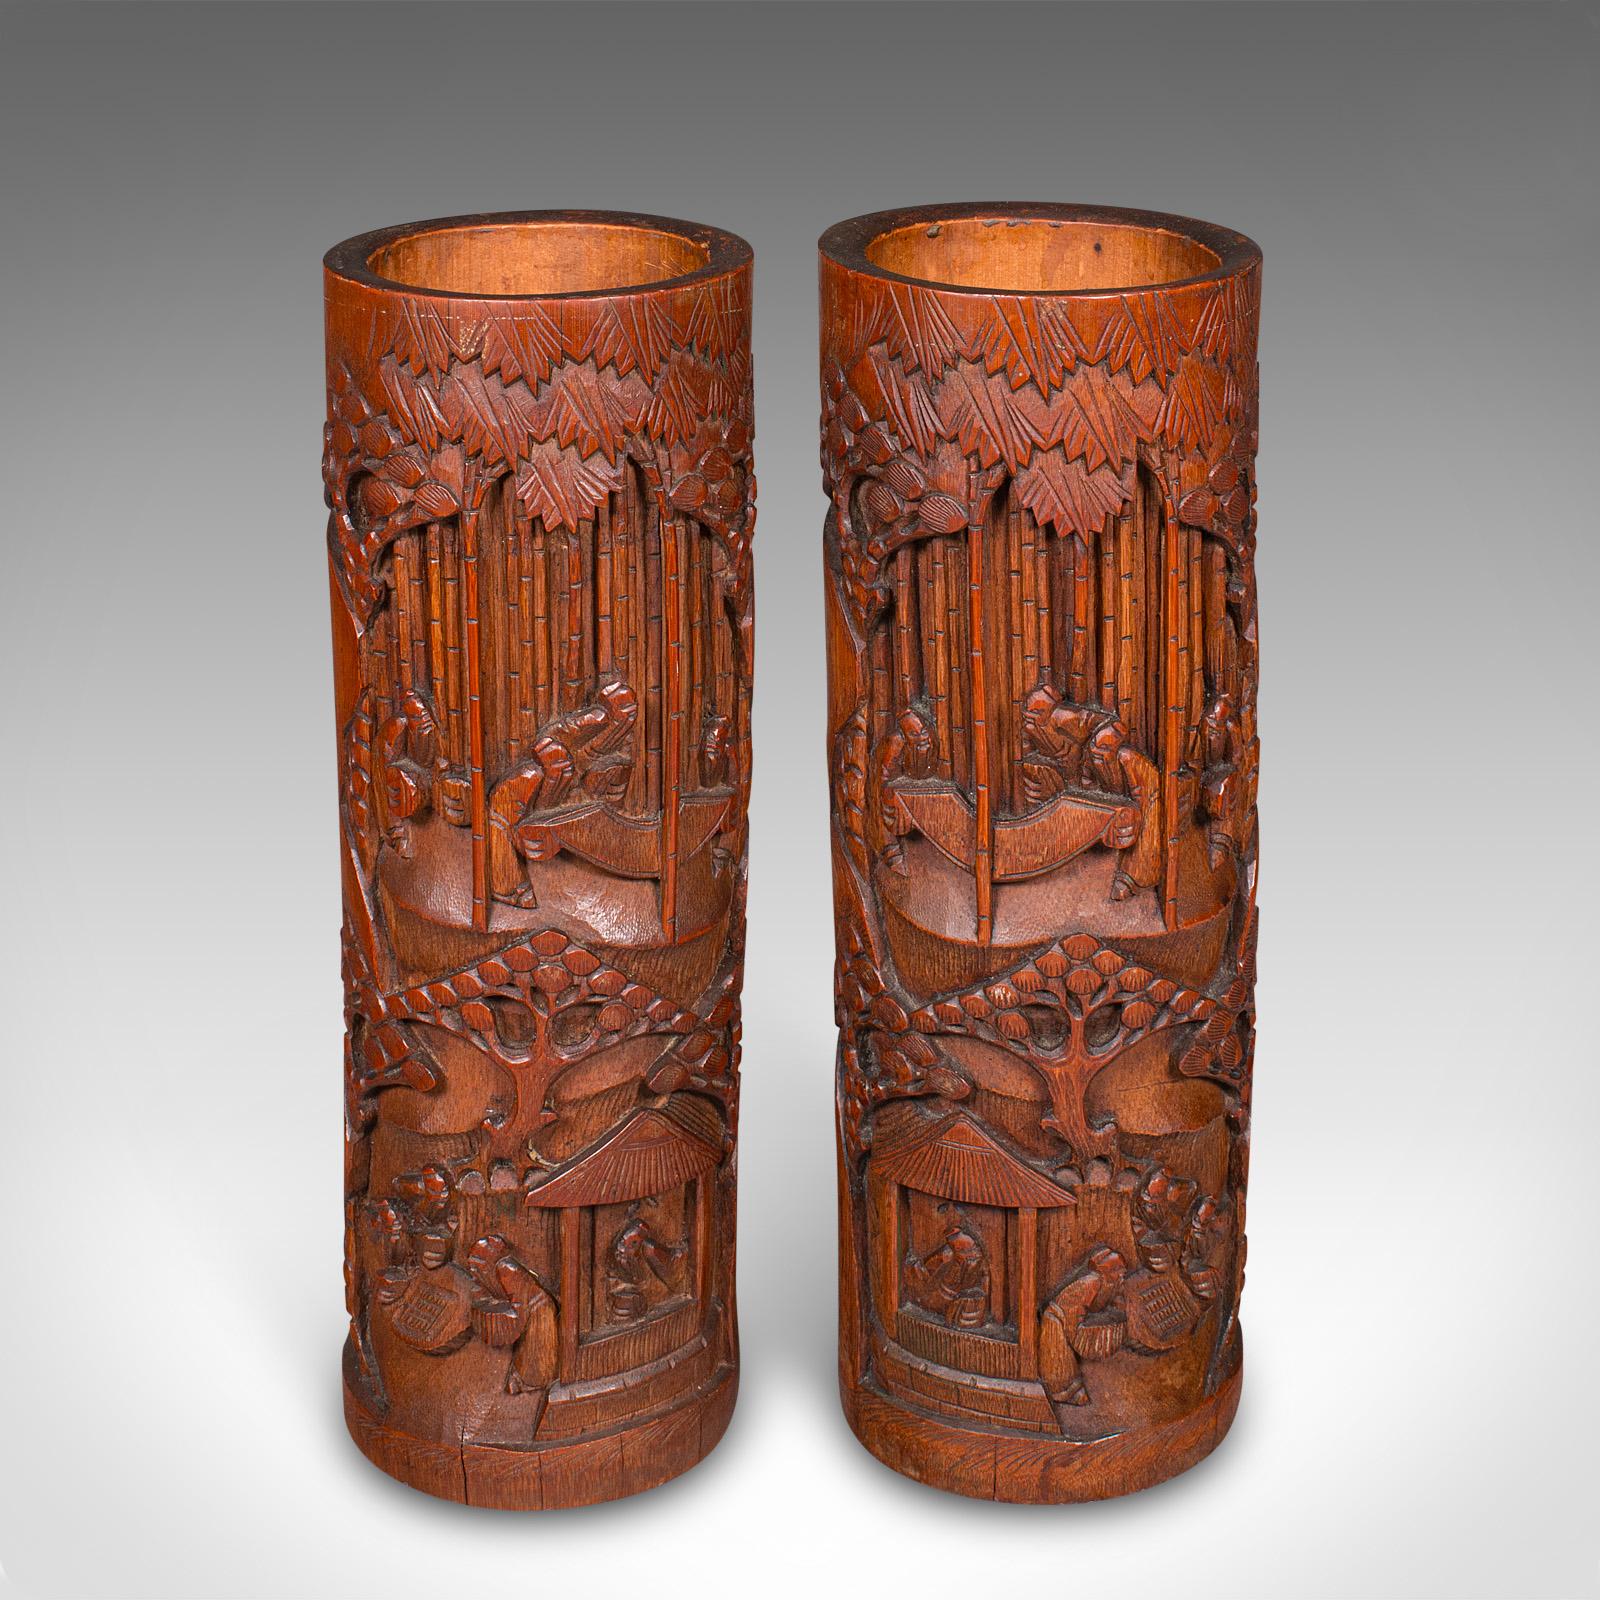 Dies ist ein hohes Paar antiker Bürstenköpfe. Eine chinesische, handgeschnitzte Bambus-Bitong oder Blumenvase aus der späten viktorianischen Zeit, um 1880.

Faszinierende Bitong, oder traditionell geschnitzte Pinseltöpfe - ideal für